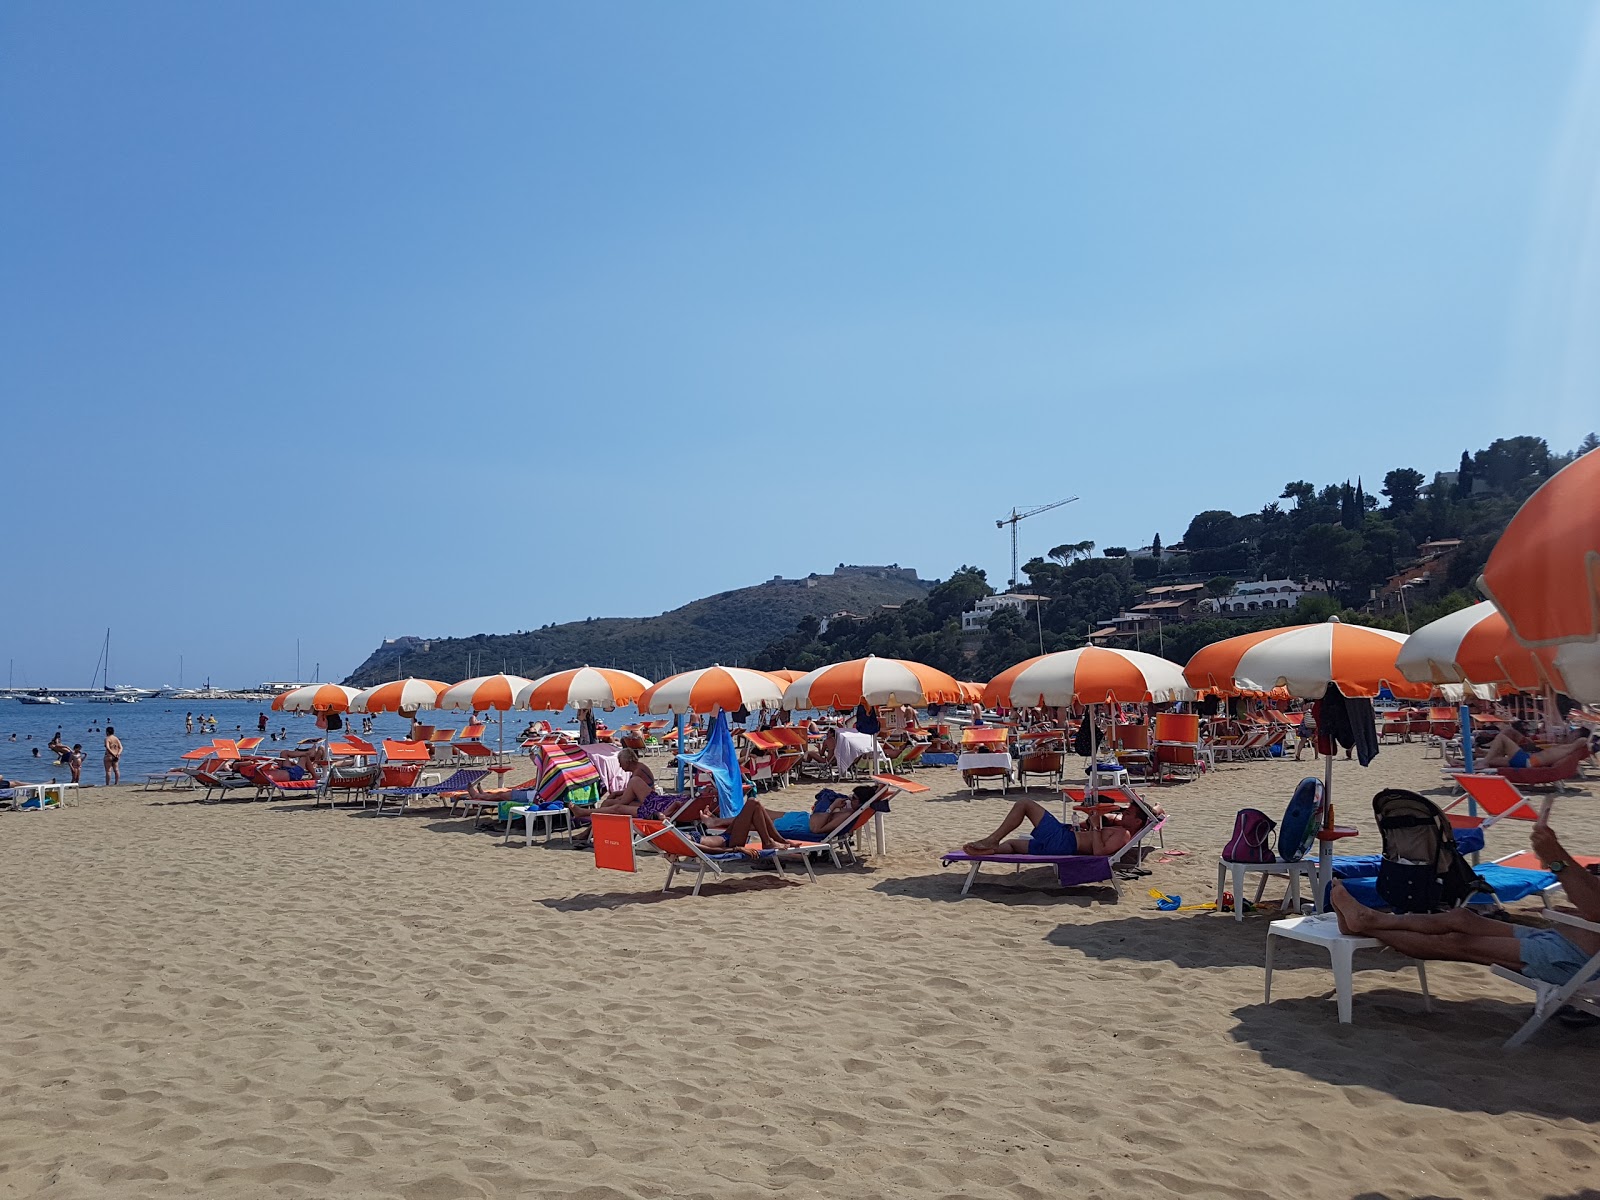 Fotografija Spiaggia della Feniglia nahaja se v naravnem okolju